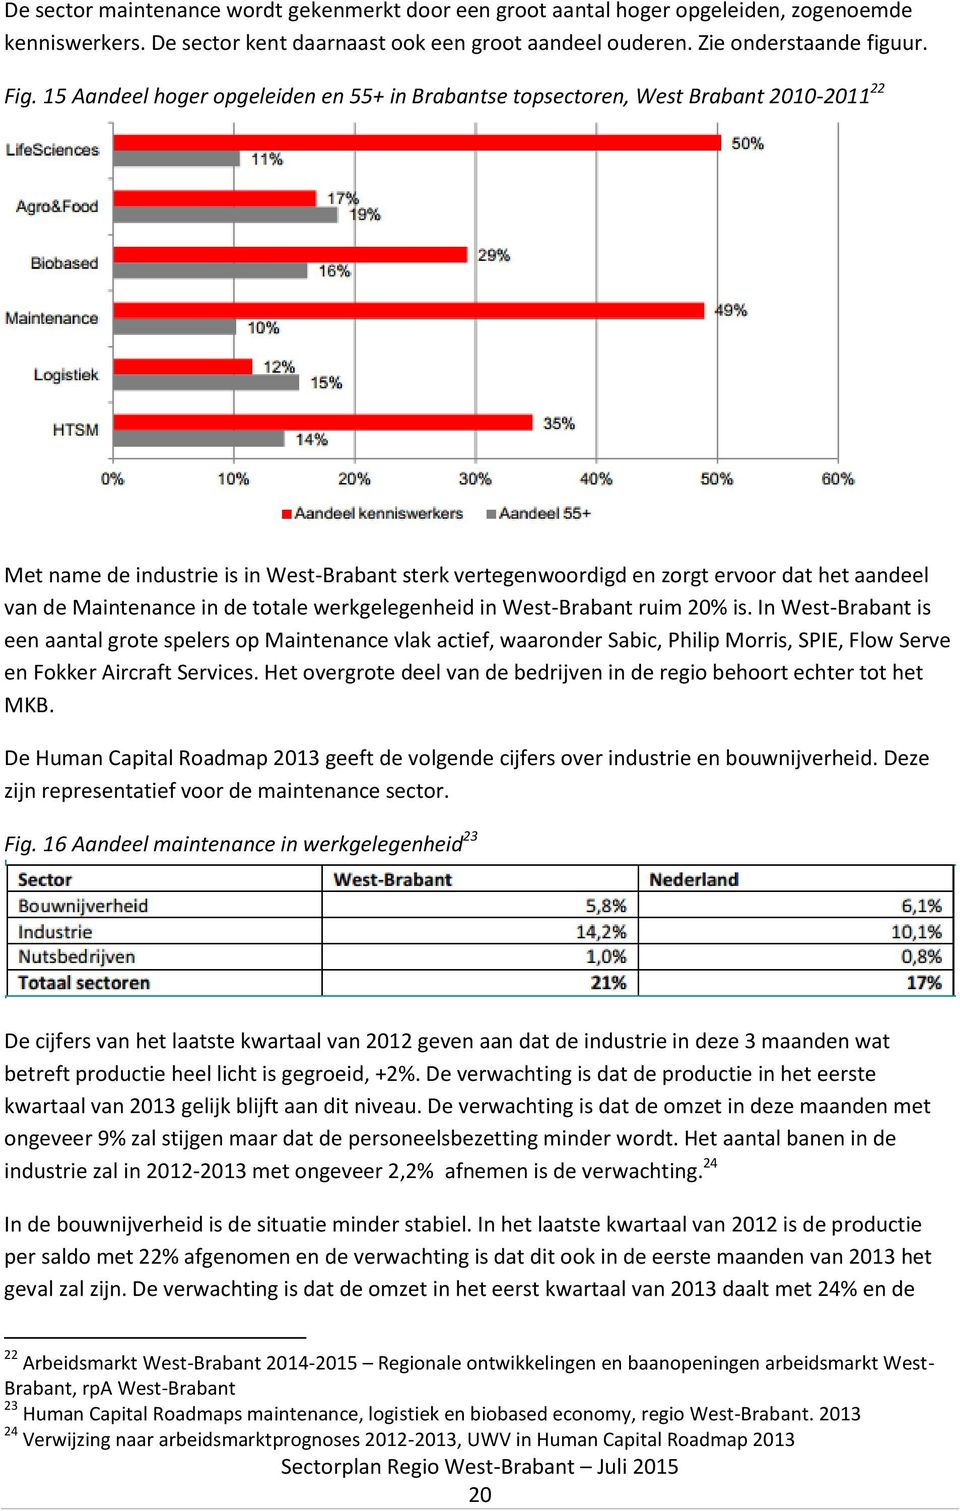 Maintenance in de totale werkgelegenheid in West-Brabant ruim 20% is.